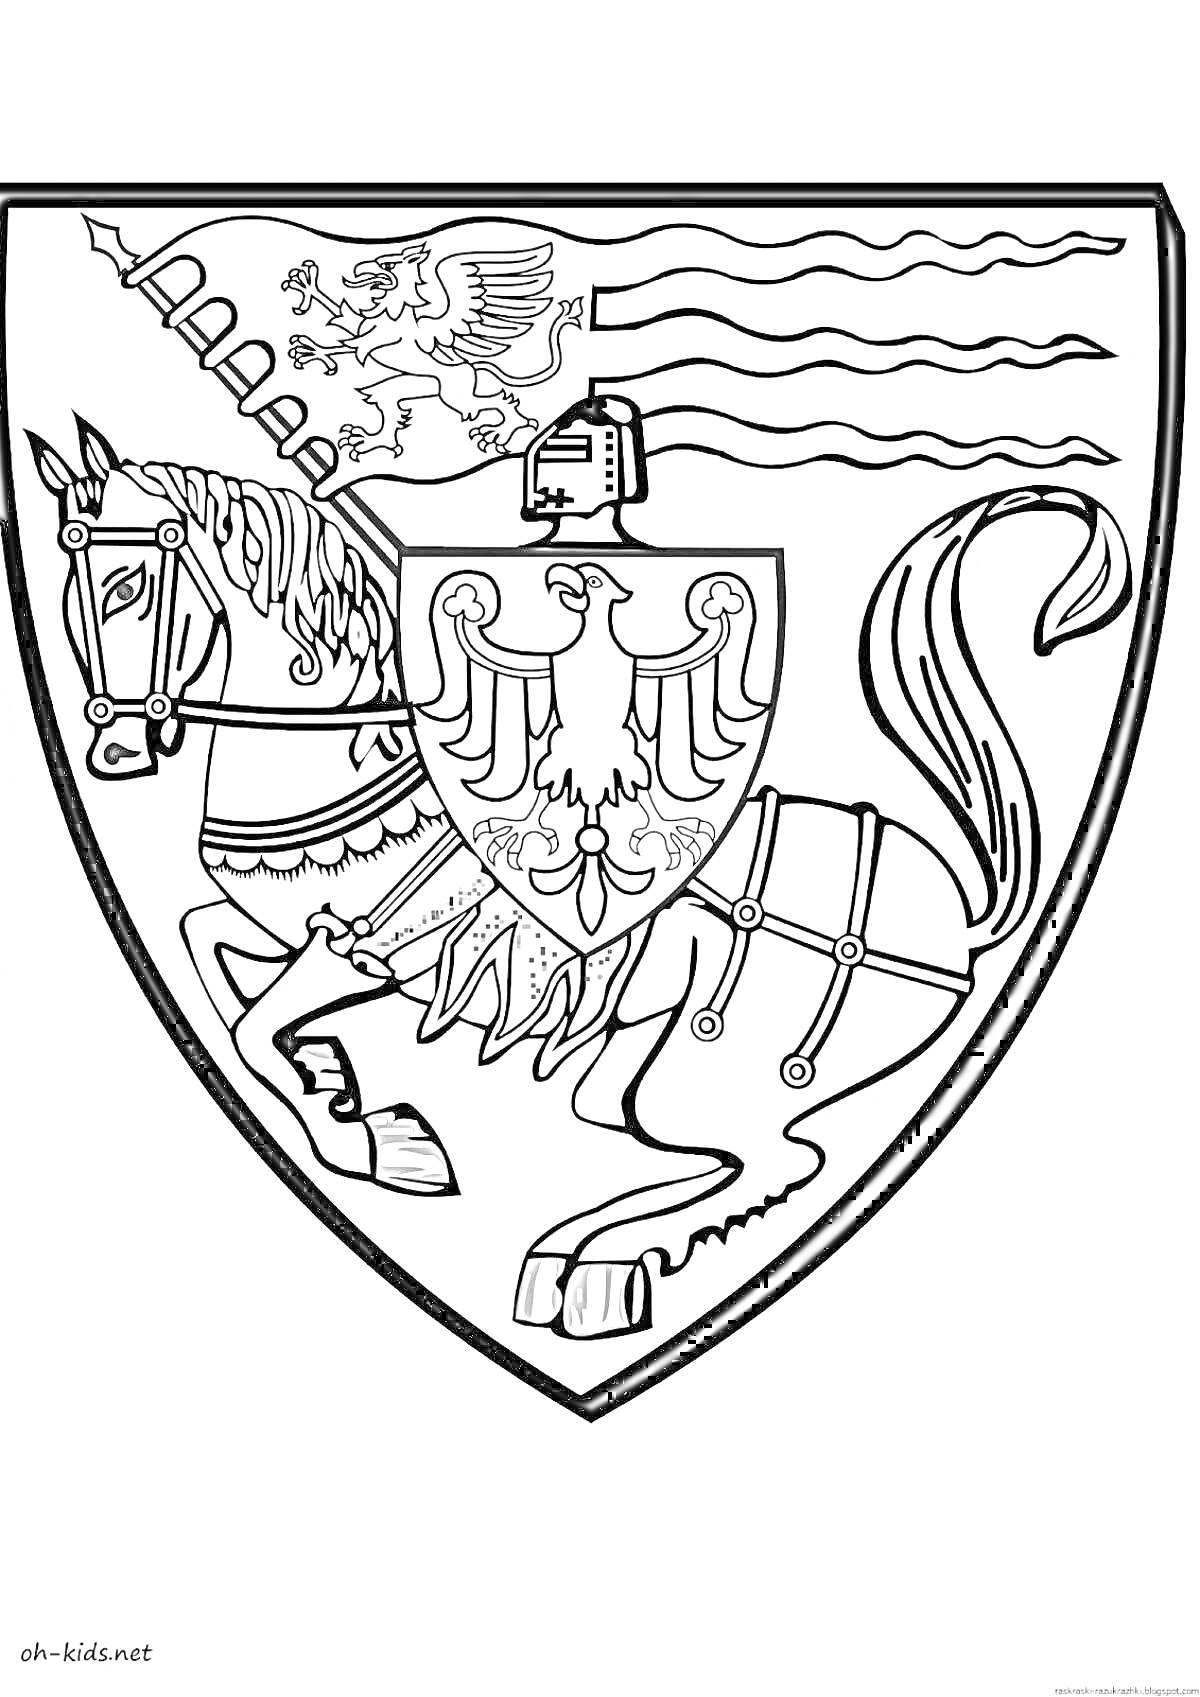 Раскраска Рыцарский герб с лошадью и орлом на щите, шлем, флаг и замок на заднем фоне.